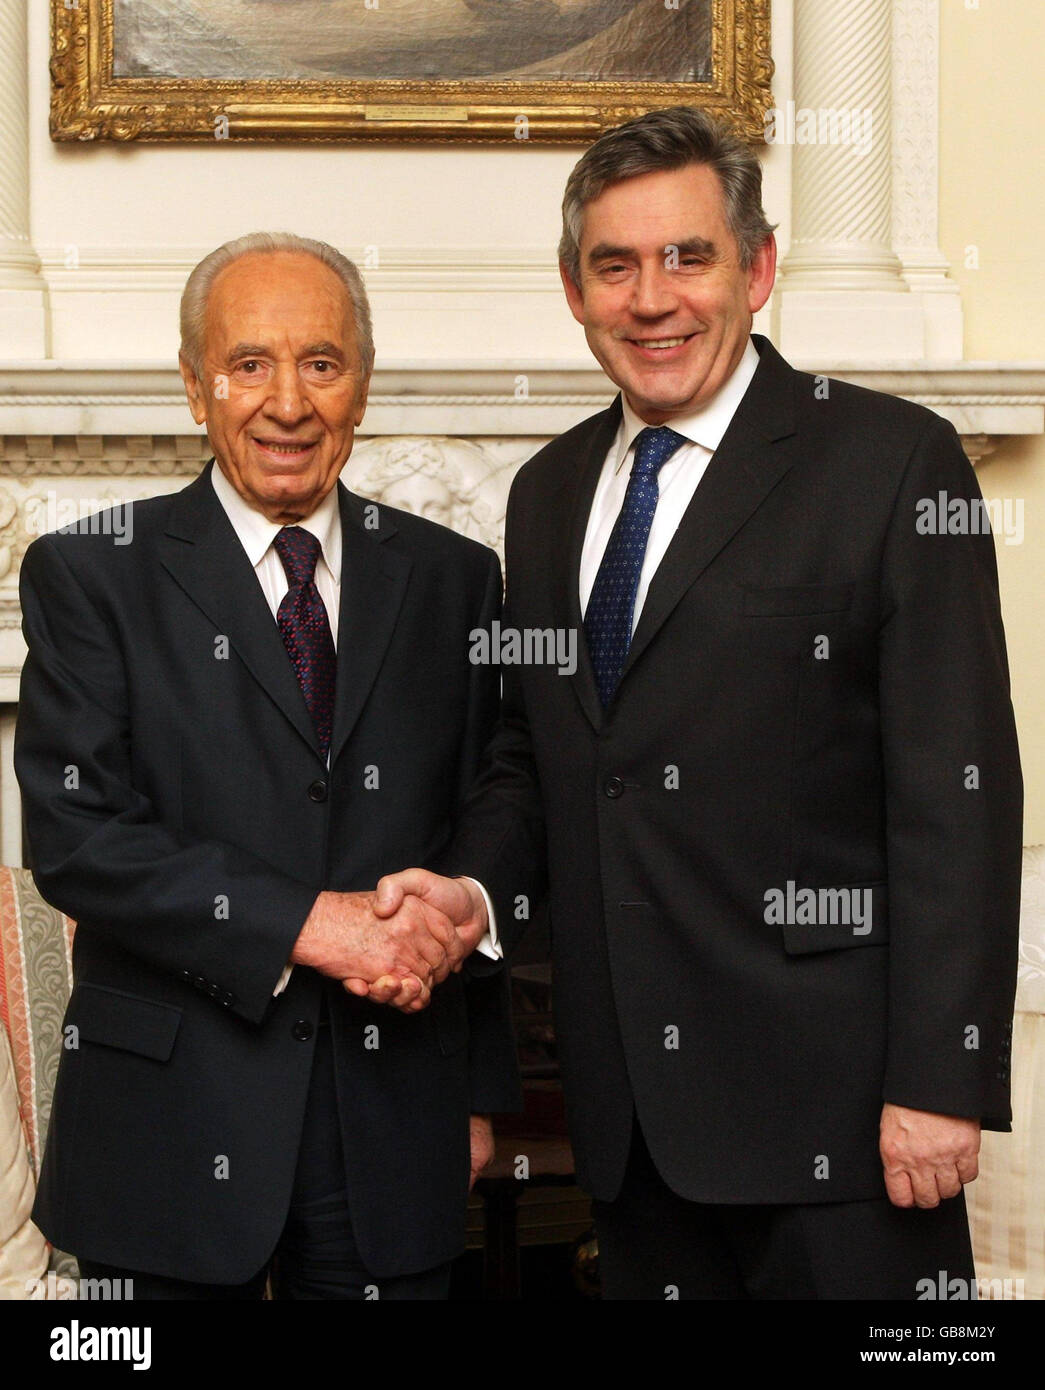 Der israelische Präsident Shimon Peres (links) wird vom britischen Premierminister Gordon Brown in der Downing Street 10 in London begrüßt. Stockfoto